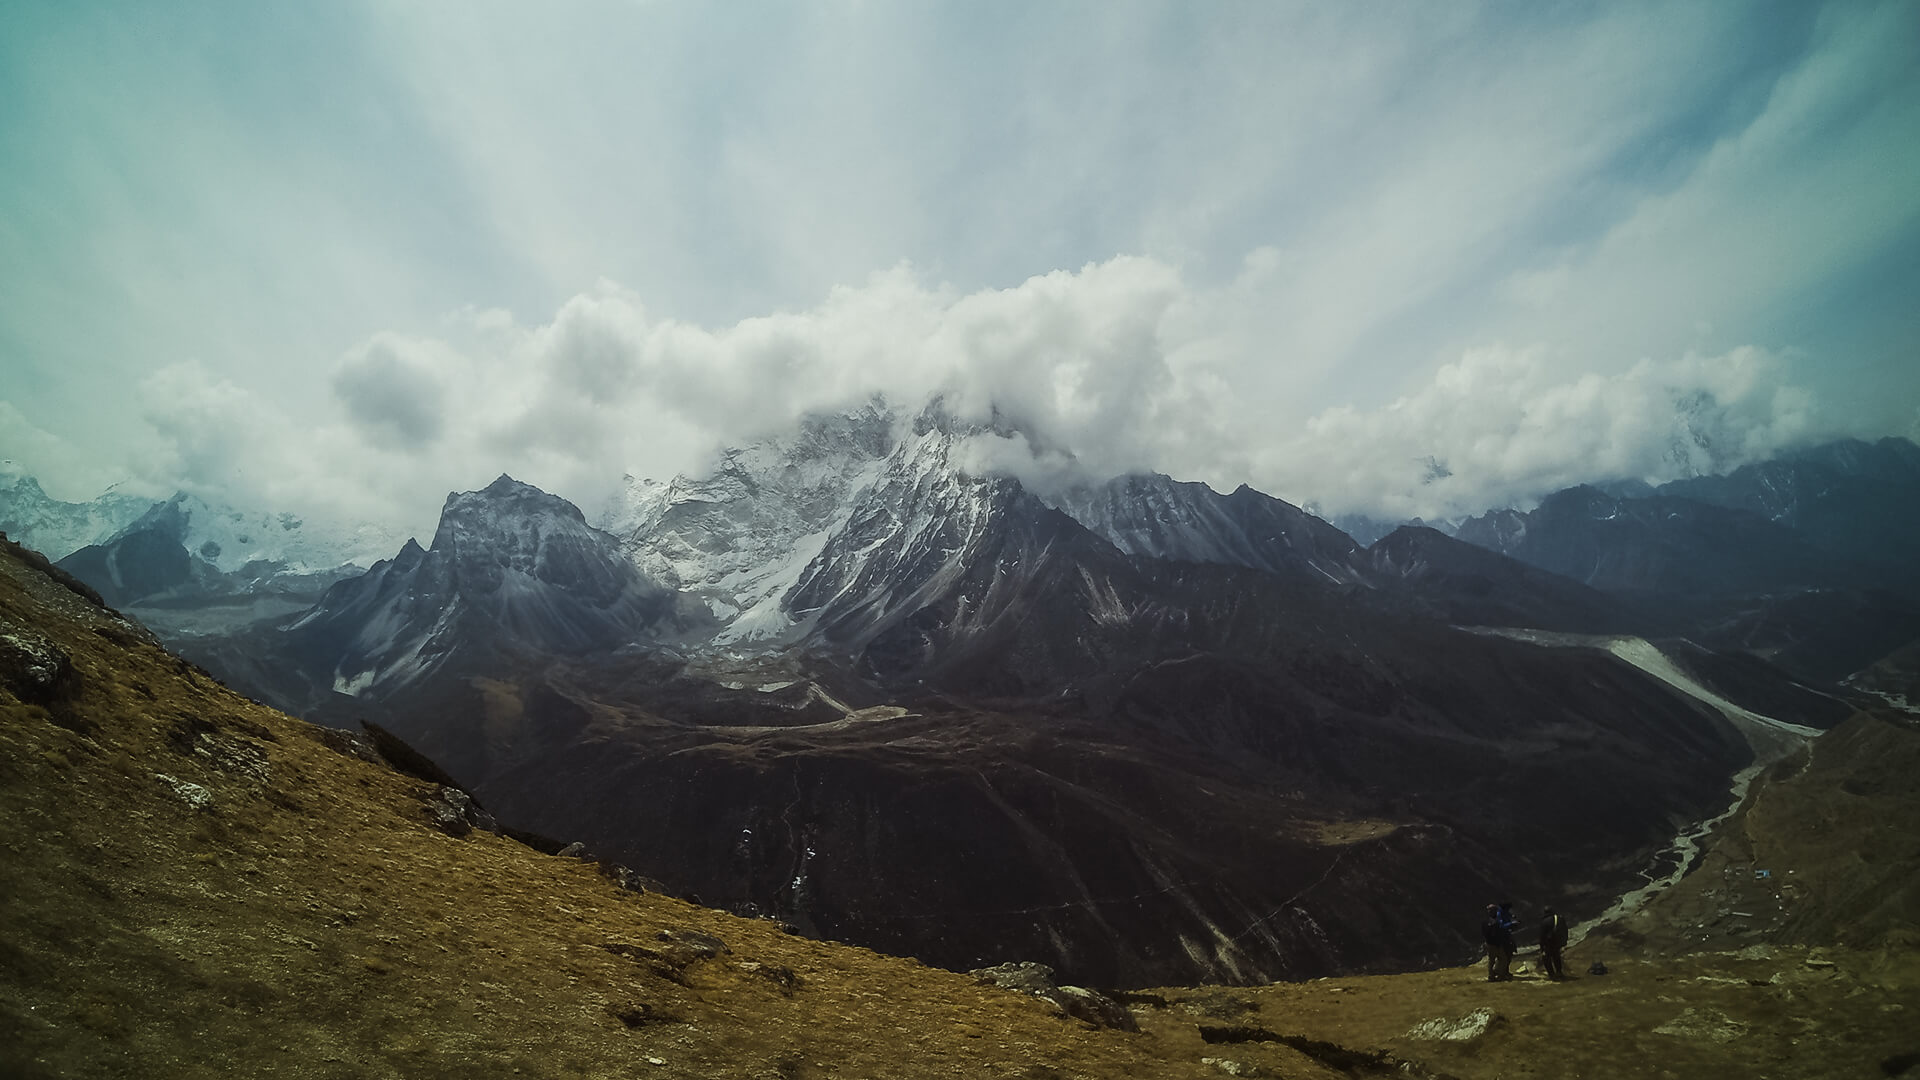 Day 6 Part 2: Nangkartshang Peak Descent & Snow in Dingboche – Everest Base Camp + Video